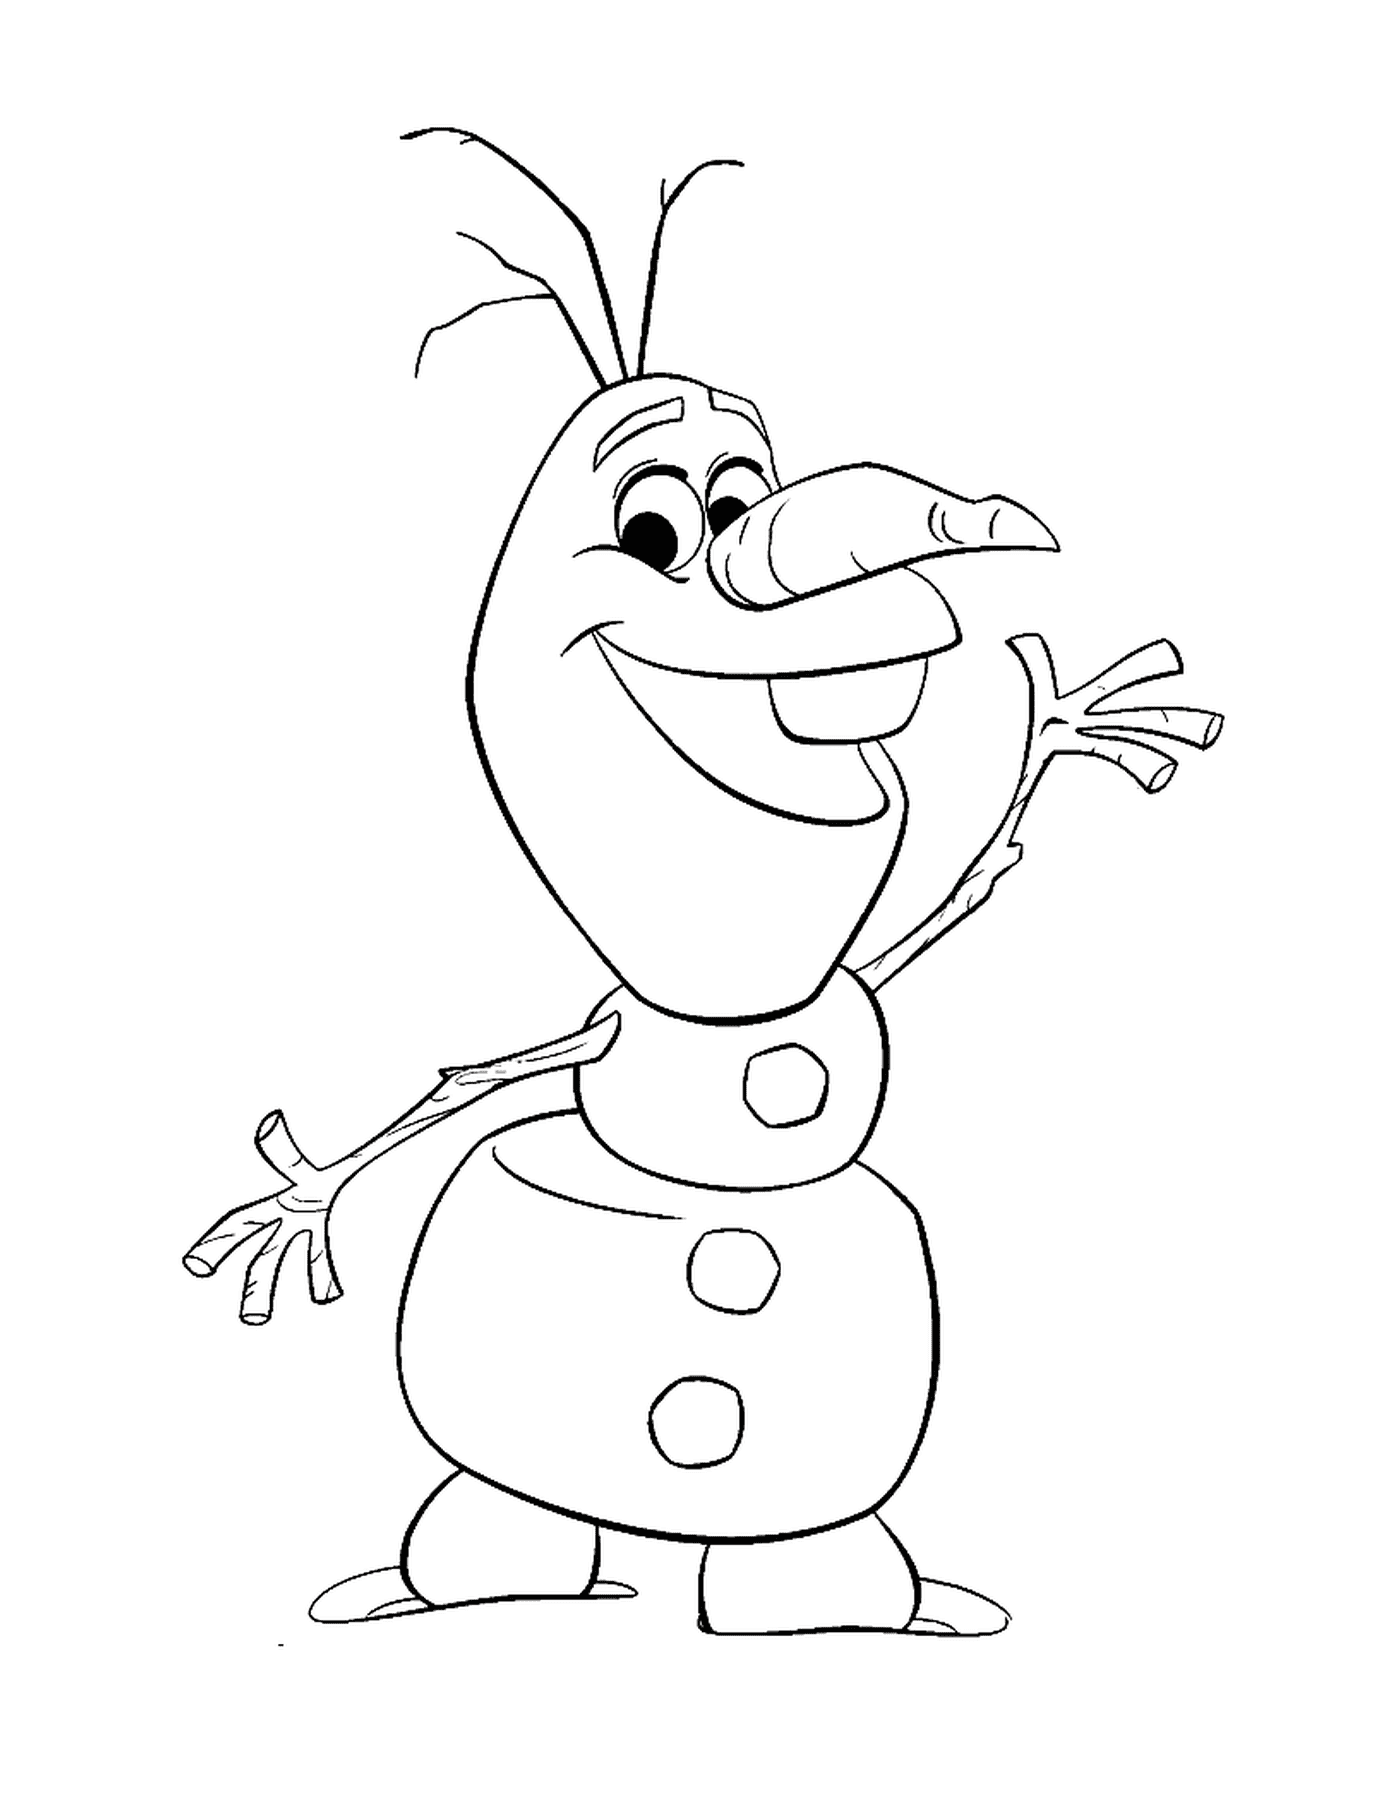  Olaf niedlich cartoon 